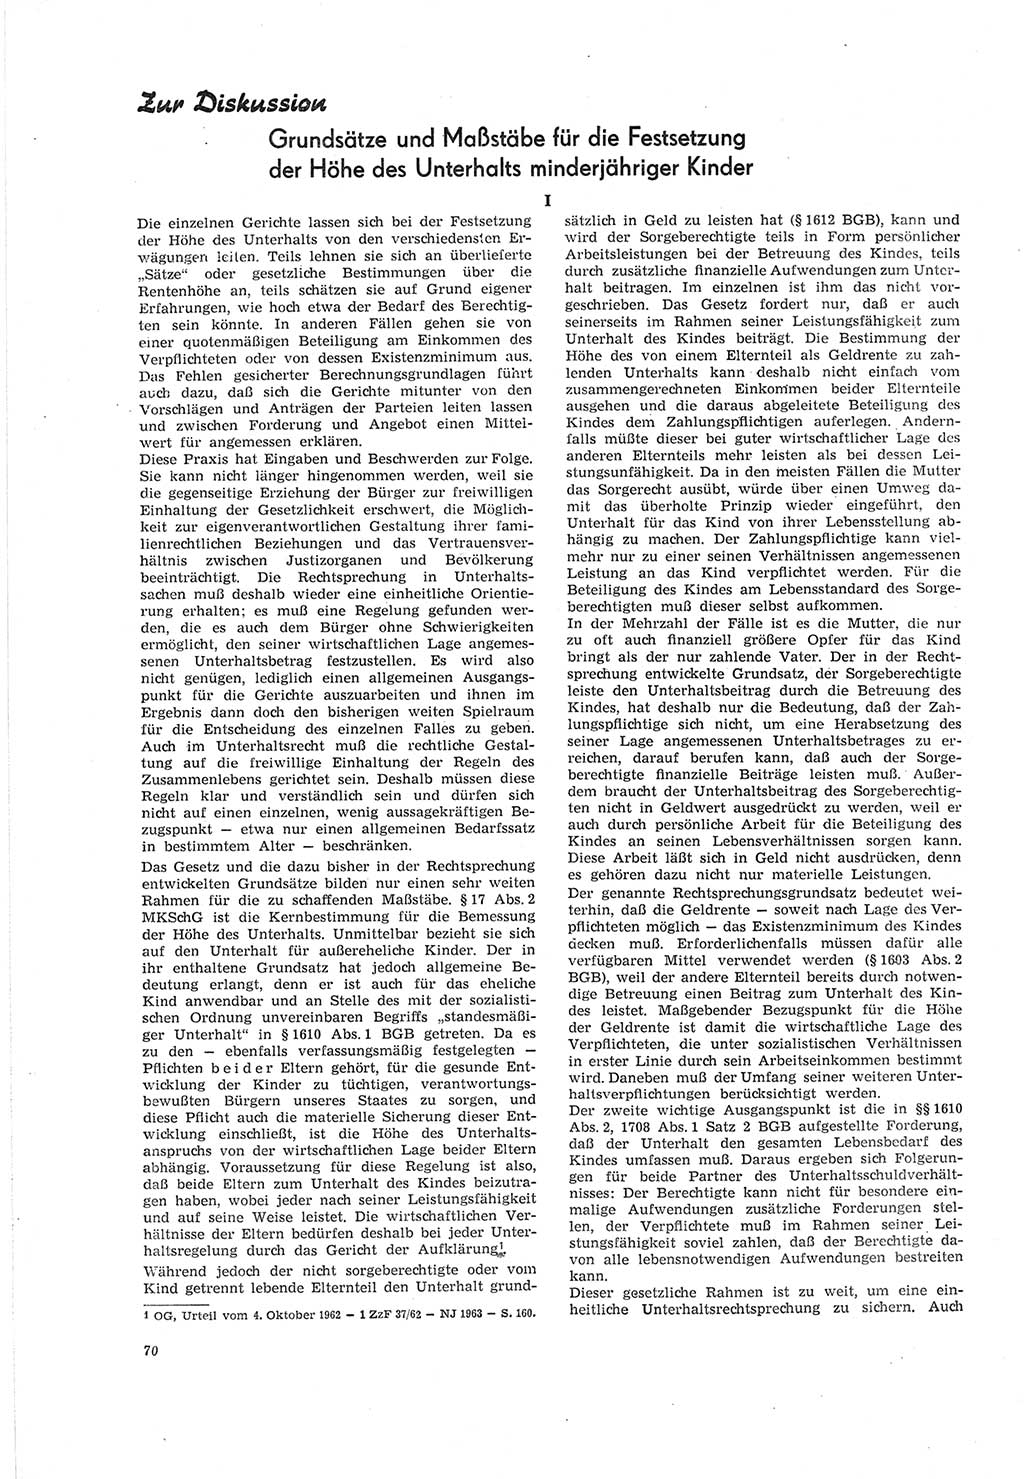 Neue Justiz (NJ), Zeitschrift für Recht und Rechtswissenschaft [Deutsche Demokratische Republik (DDR)], 19. Jahrgang 1965, Seite 70 (NJ DDR 1965, S. 70)